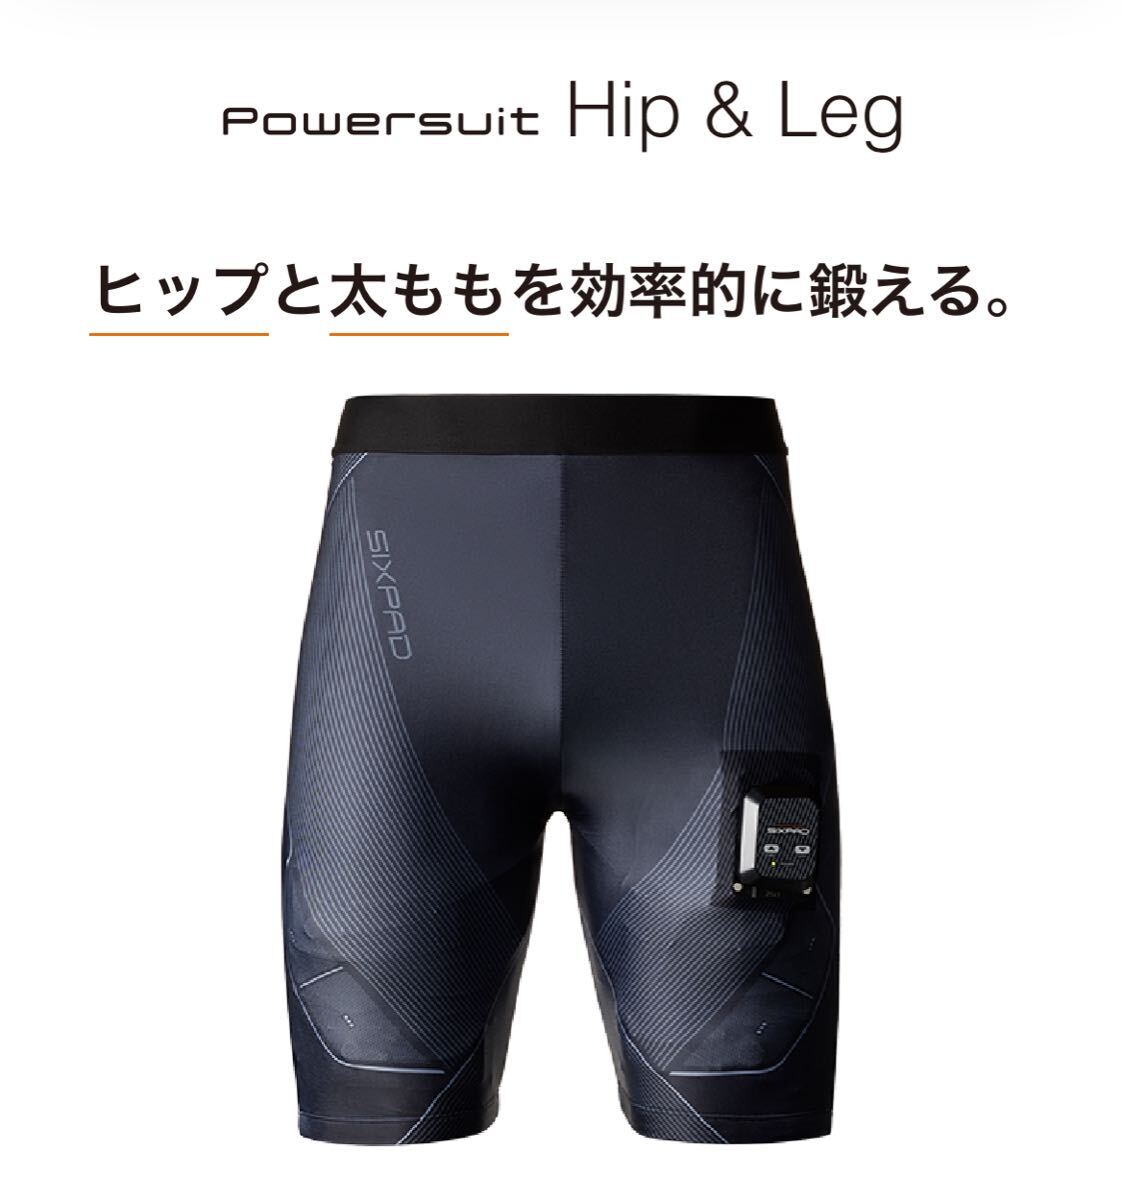 新型 シックスパッド SIXPAD Hip&Leg Men’s Lサイズ シックスパッド パワースーツ ヒップ&レッグ コントローラ付属 太腿 強化 正規品の画像1